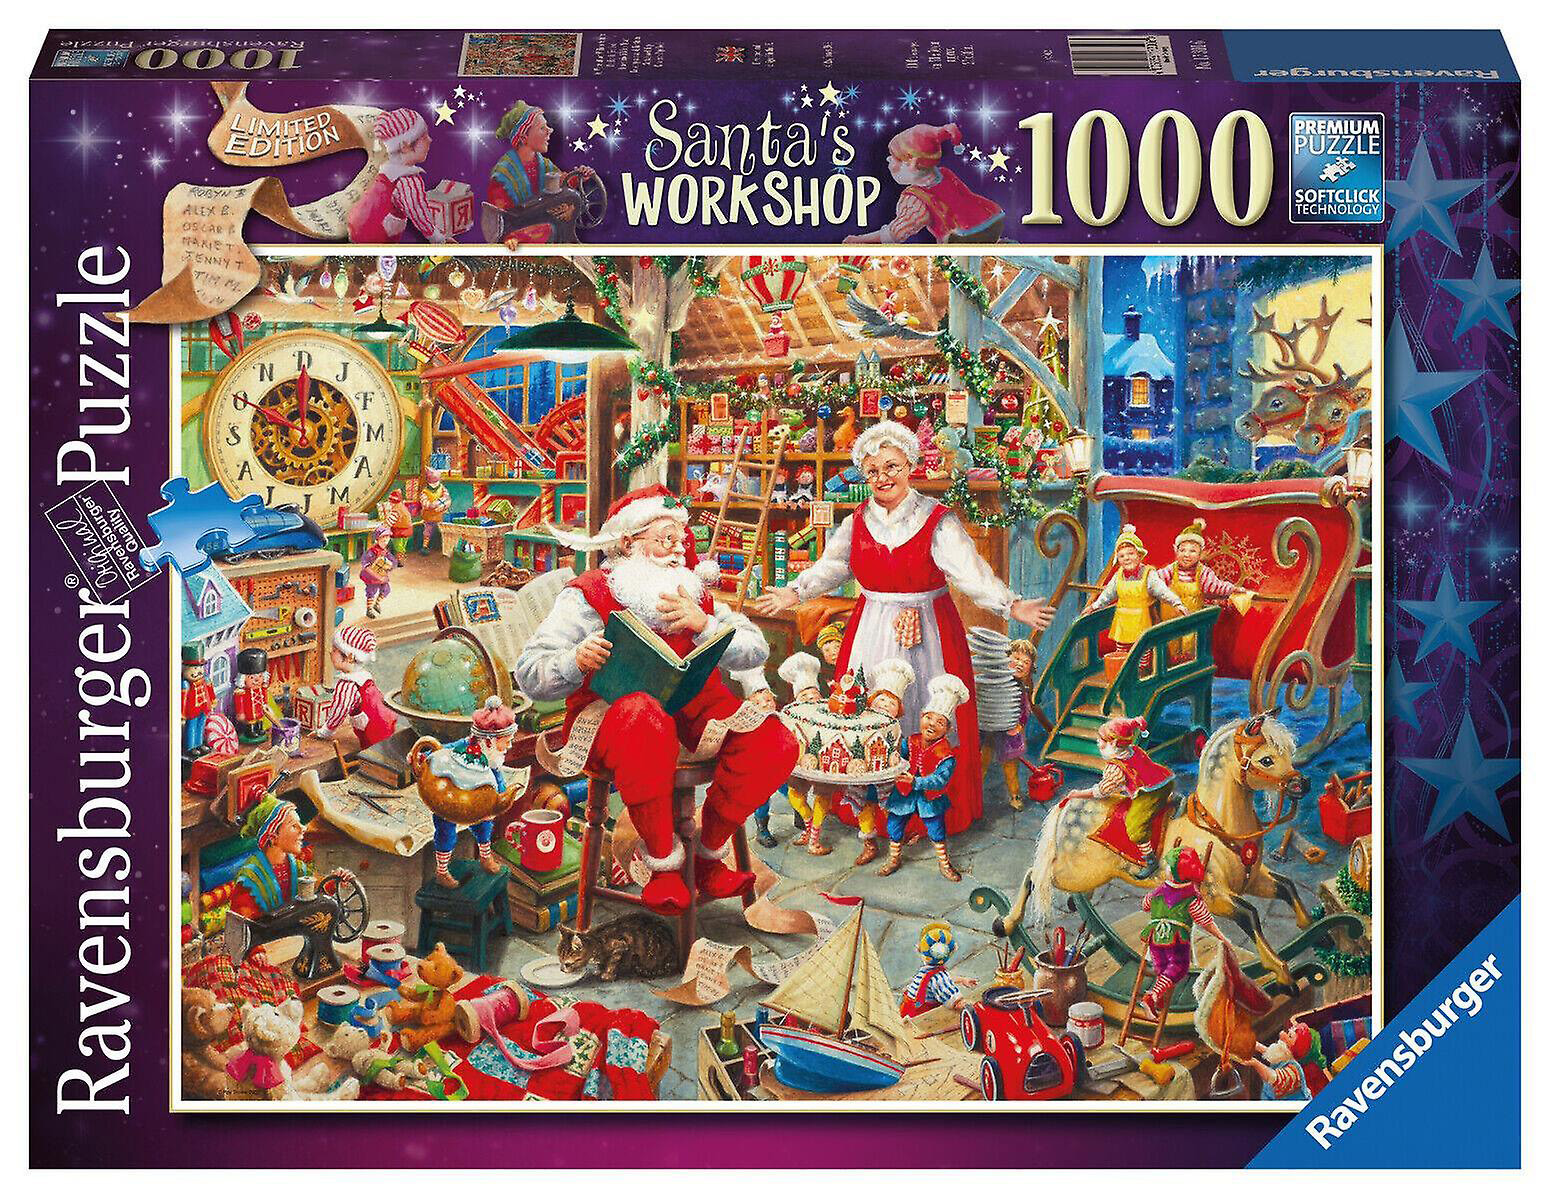 Santa's Workshop Limited Edition 2022